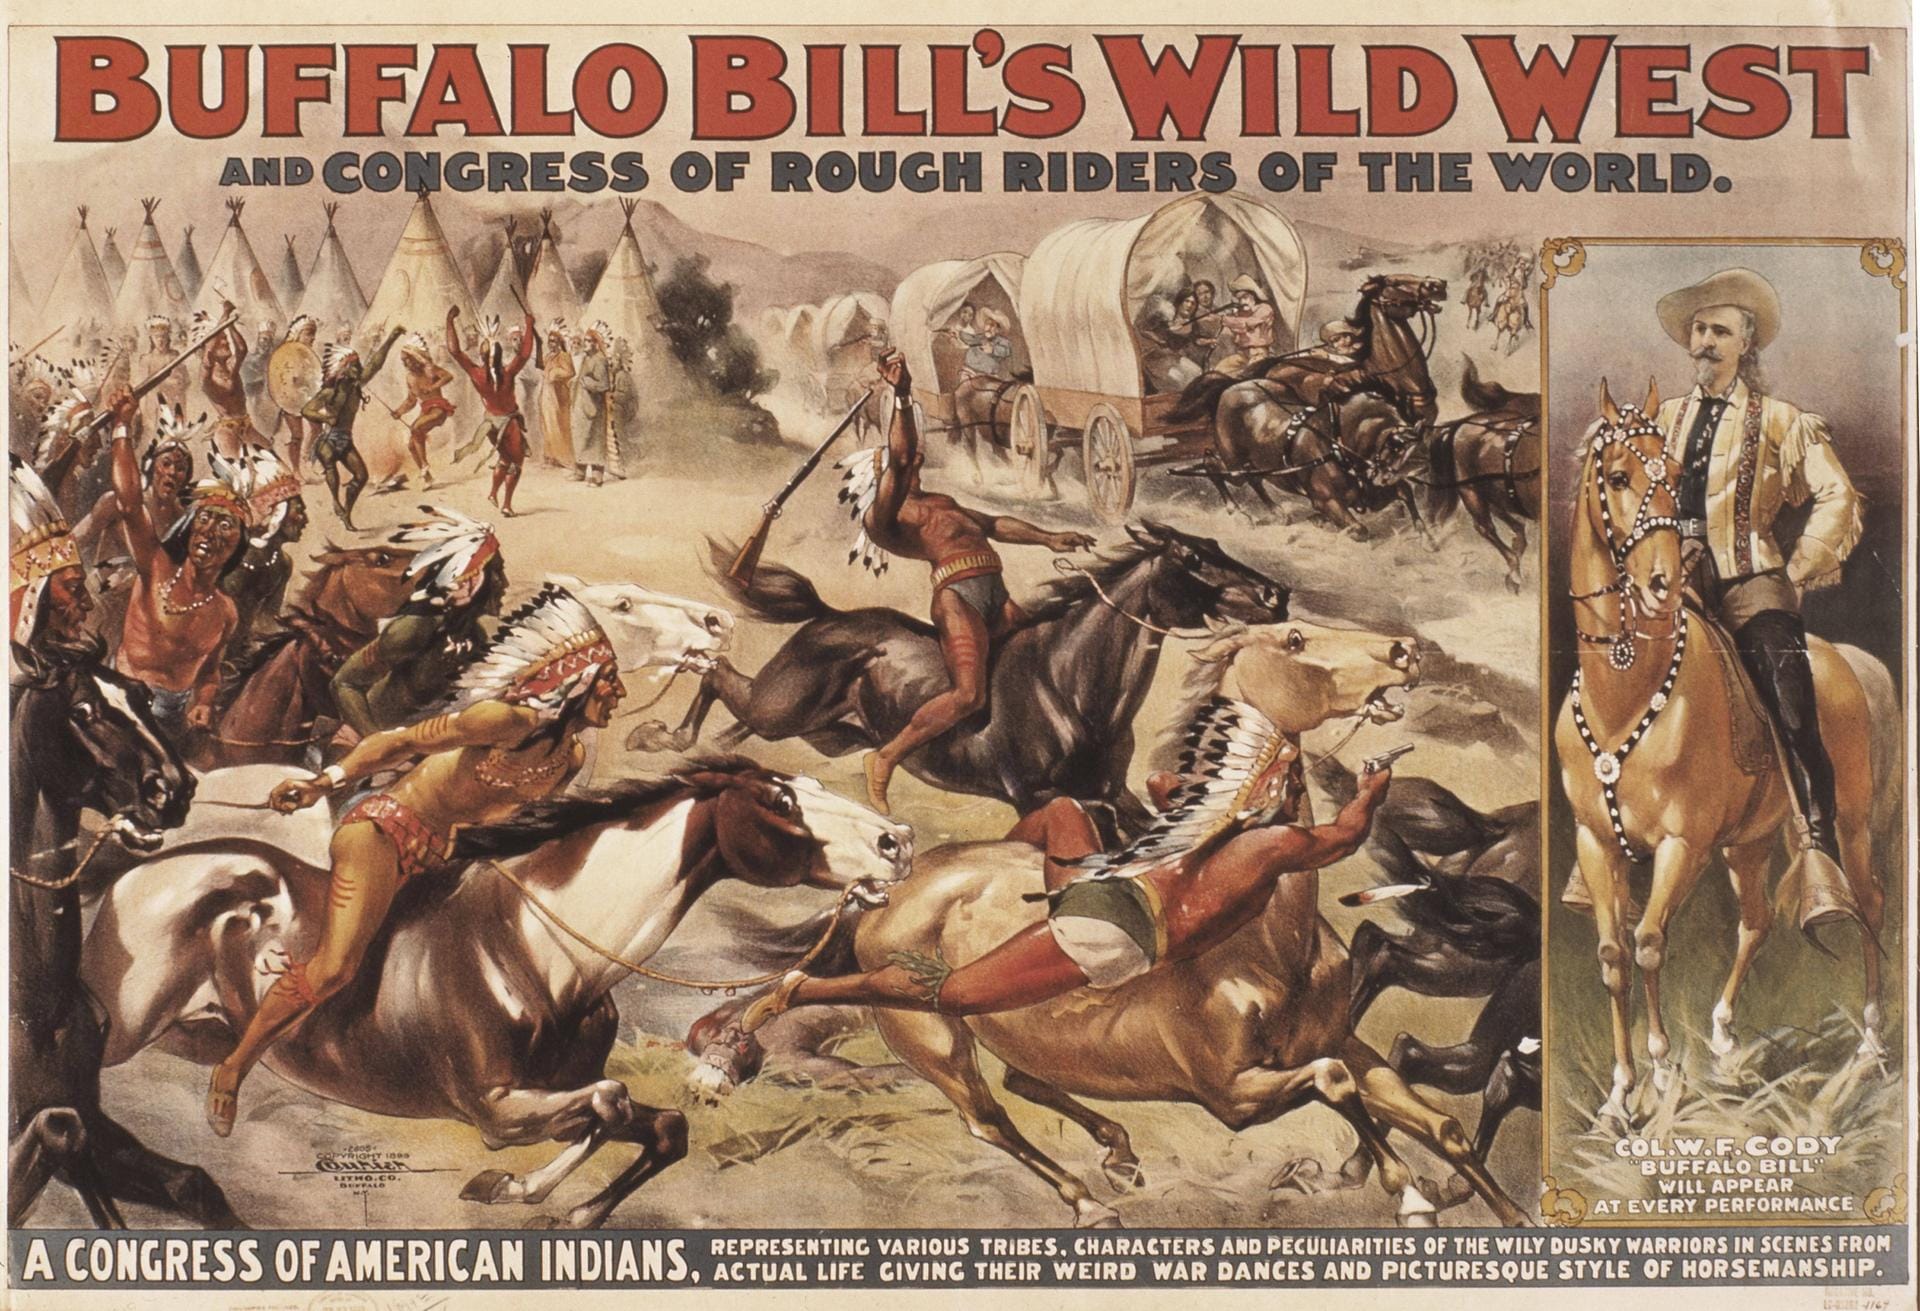 Nachdem Cody die Büffeljagd eines russischen Großfürsten geleitet und für diesen auch besondere "Wildwest-Unterhaltung" organisiert hatte, wuchs diese Show bald zu "Buffalo Bill's Wild West" heran. Millionen Menschen erzählte er damit zwischen 1883 und 1913 von Abenteuern und Alltag, Kämpfen und Kultur der Pionierjahre.